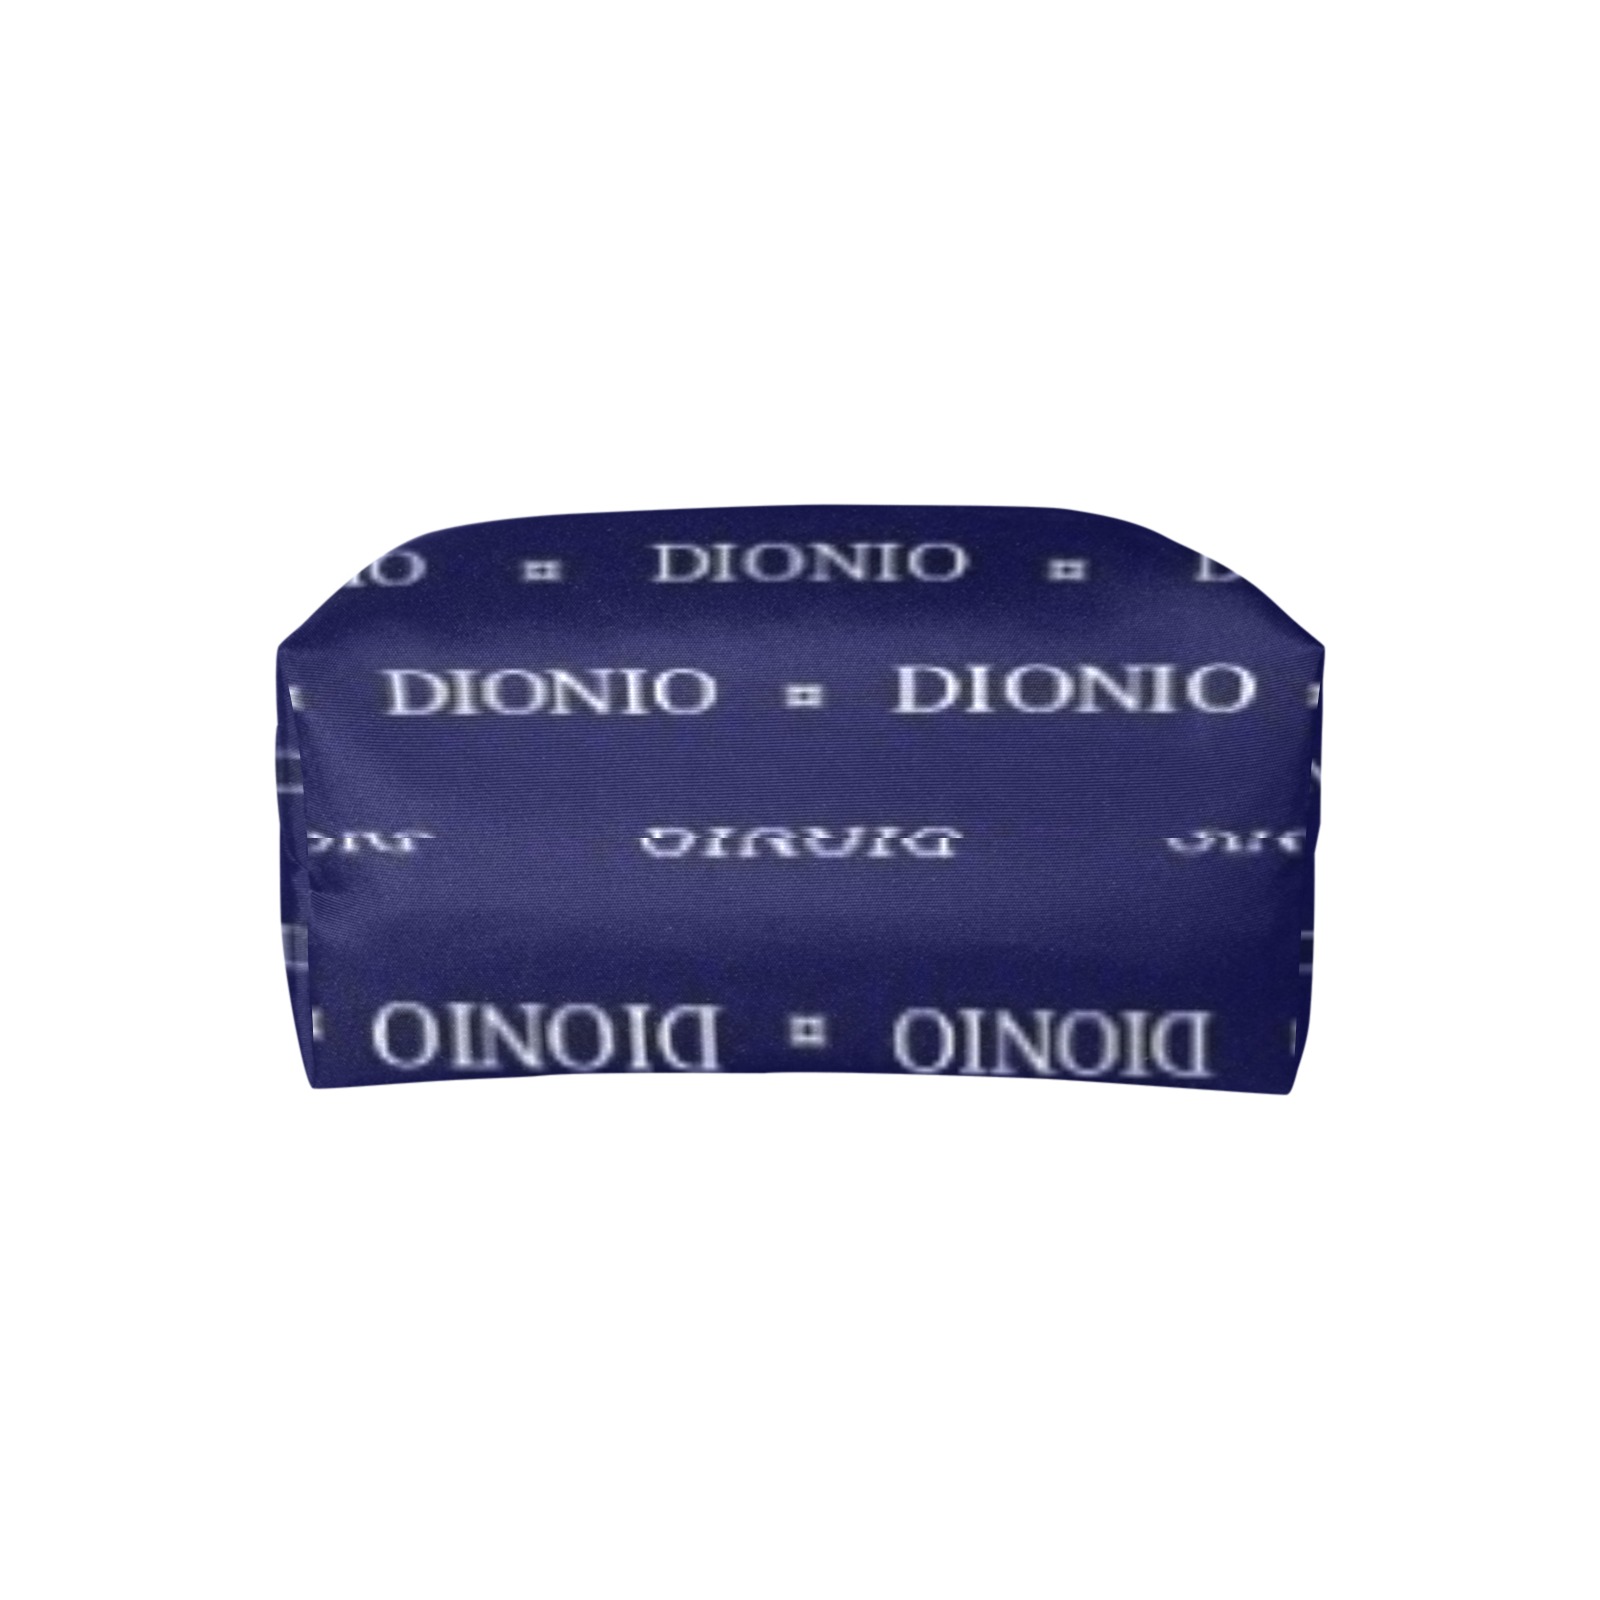 Dionio - Single Shoulder Lady Handbag (Blue Repeat Shield Logo) Single-Shoulder Lady Handbag (Model 1714)